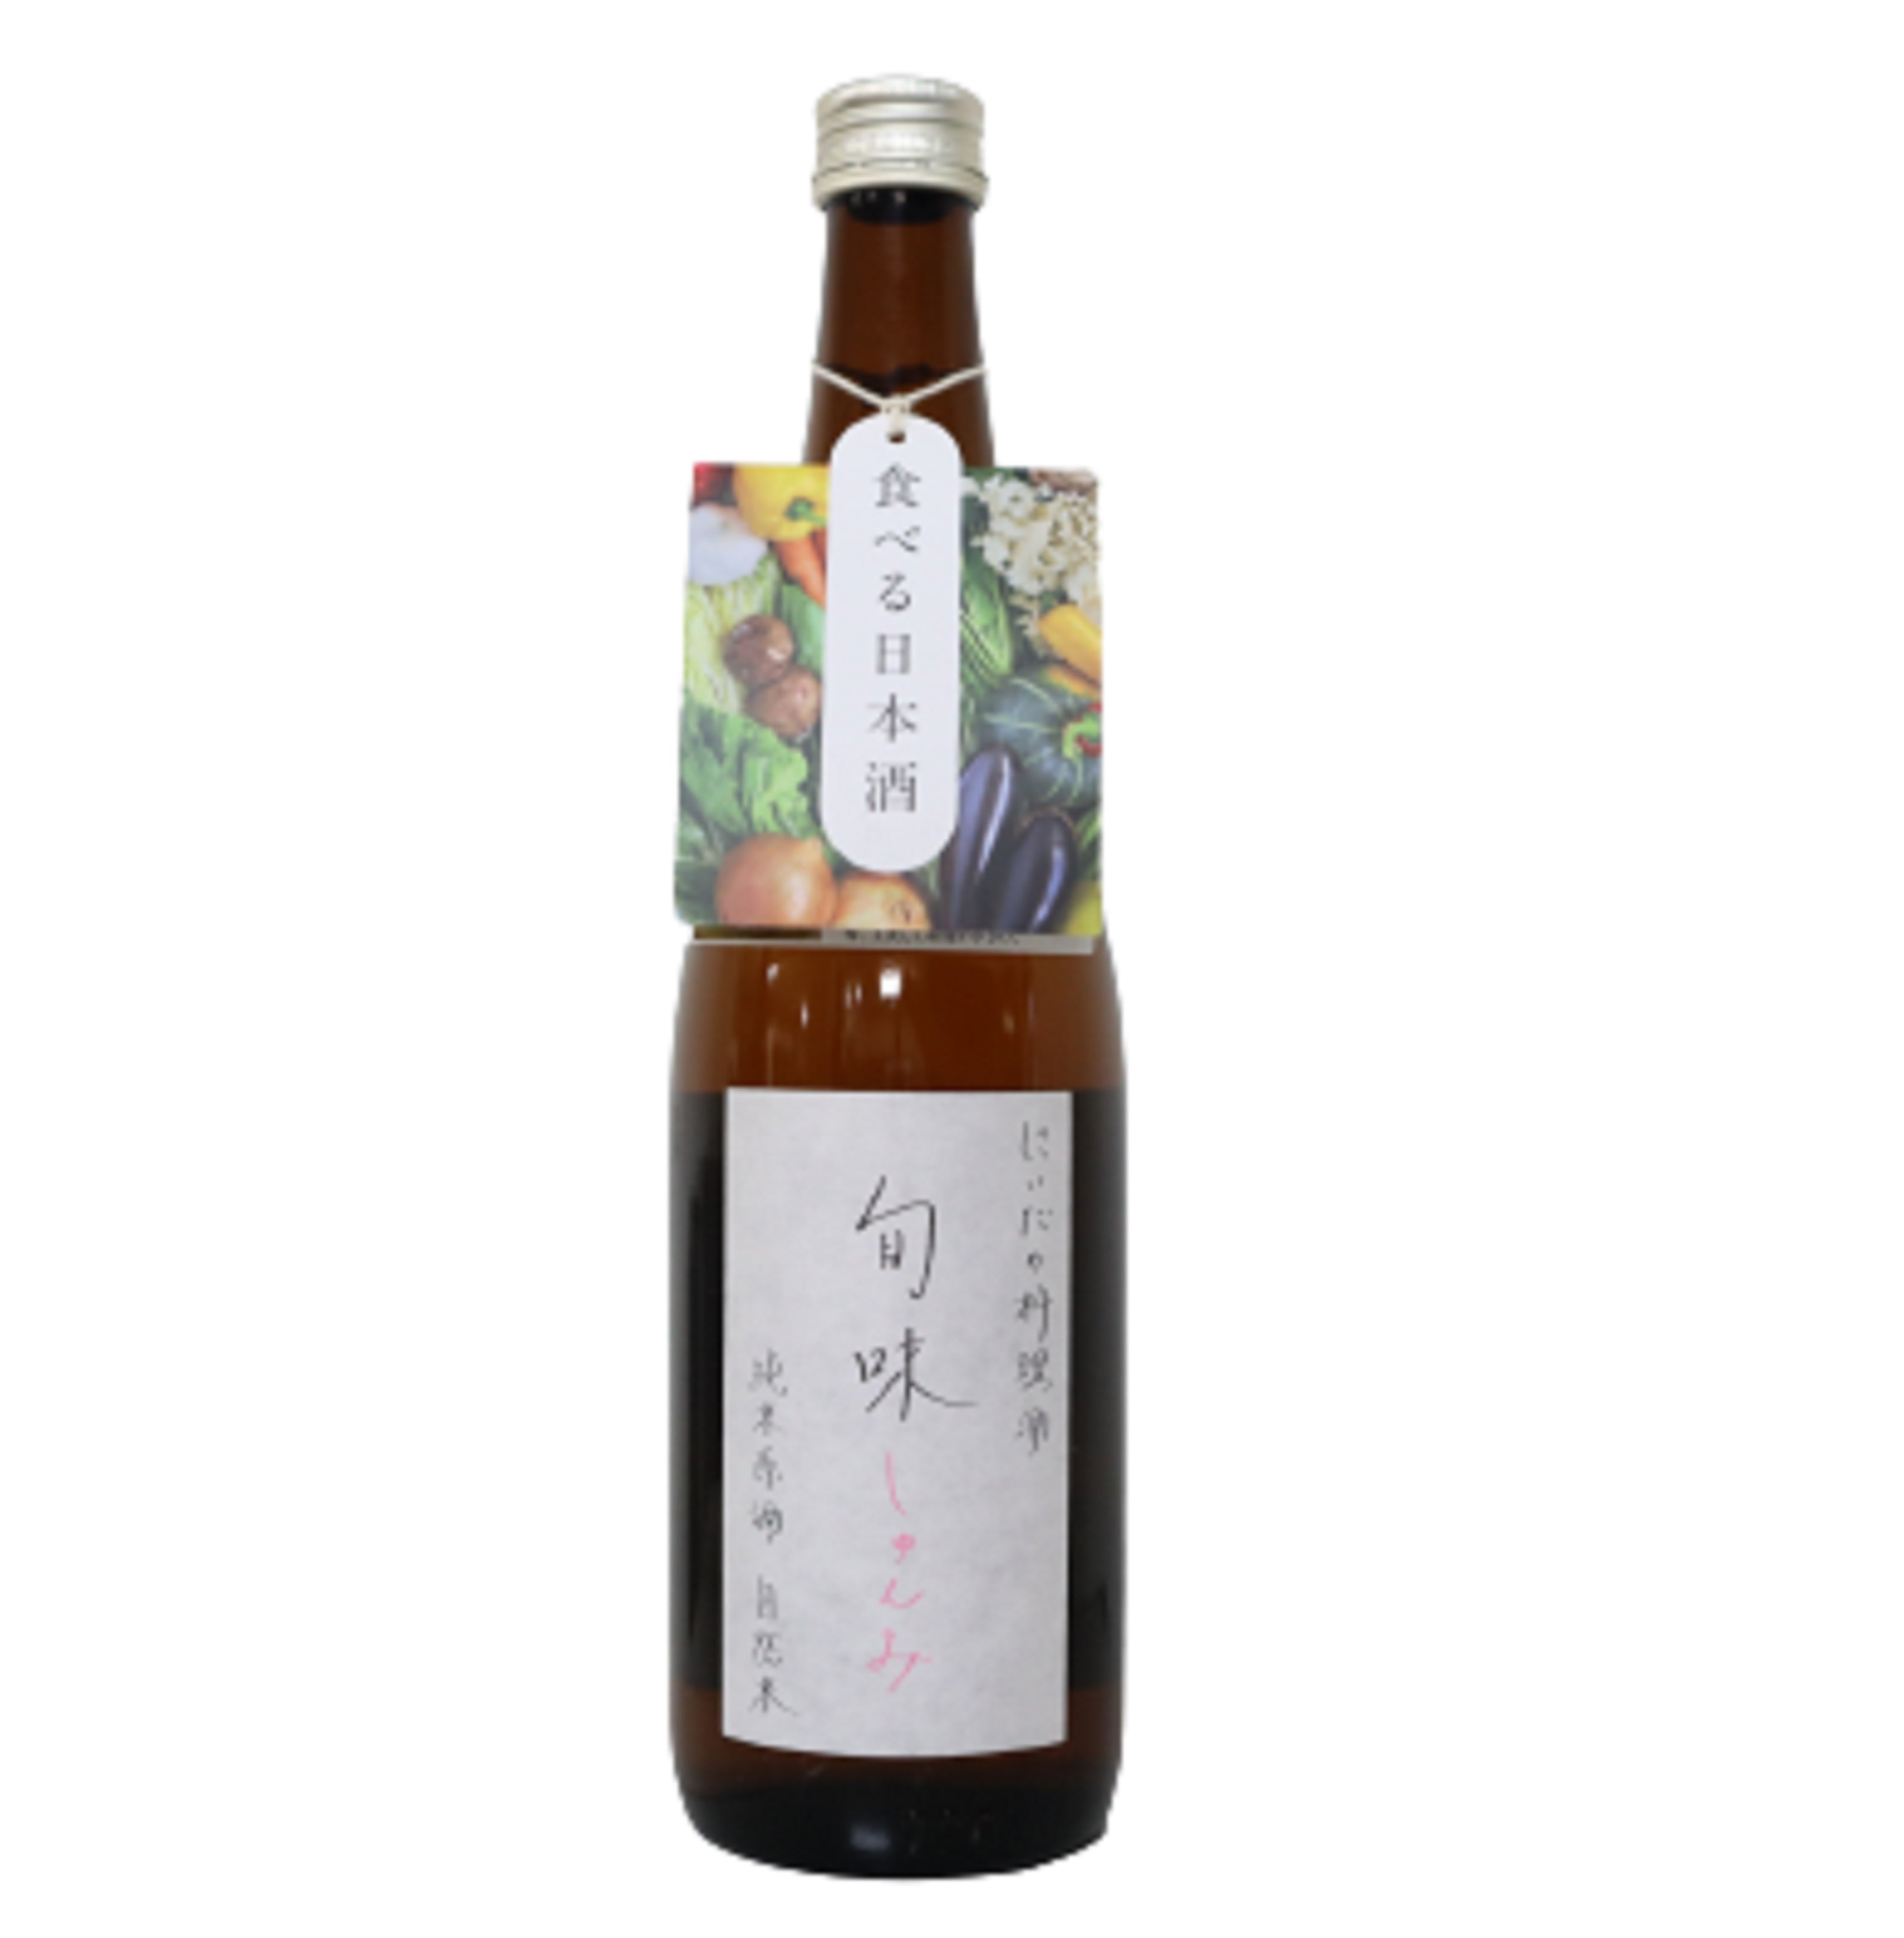 にいだの料理酒 旬味 純米原酒 自然米【720ml】